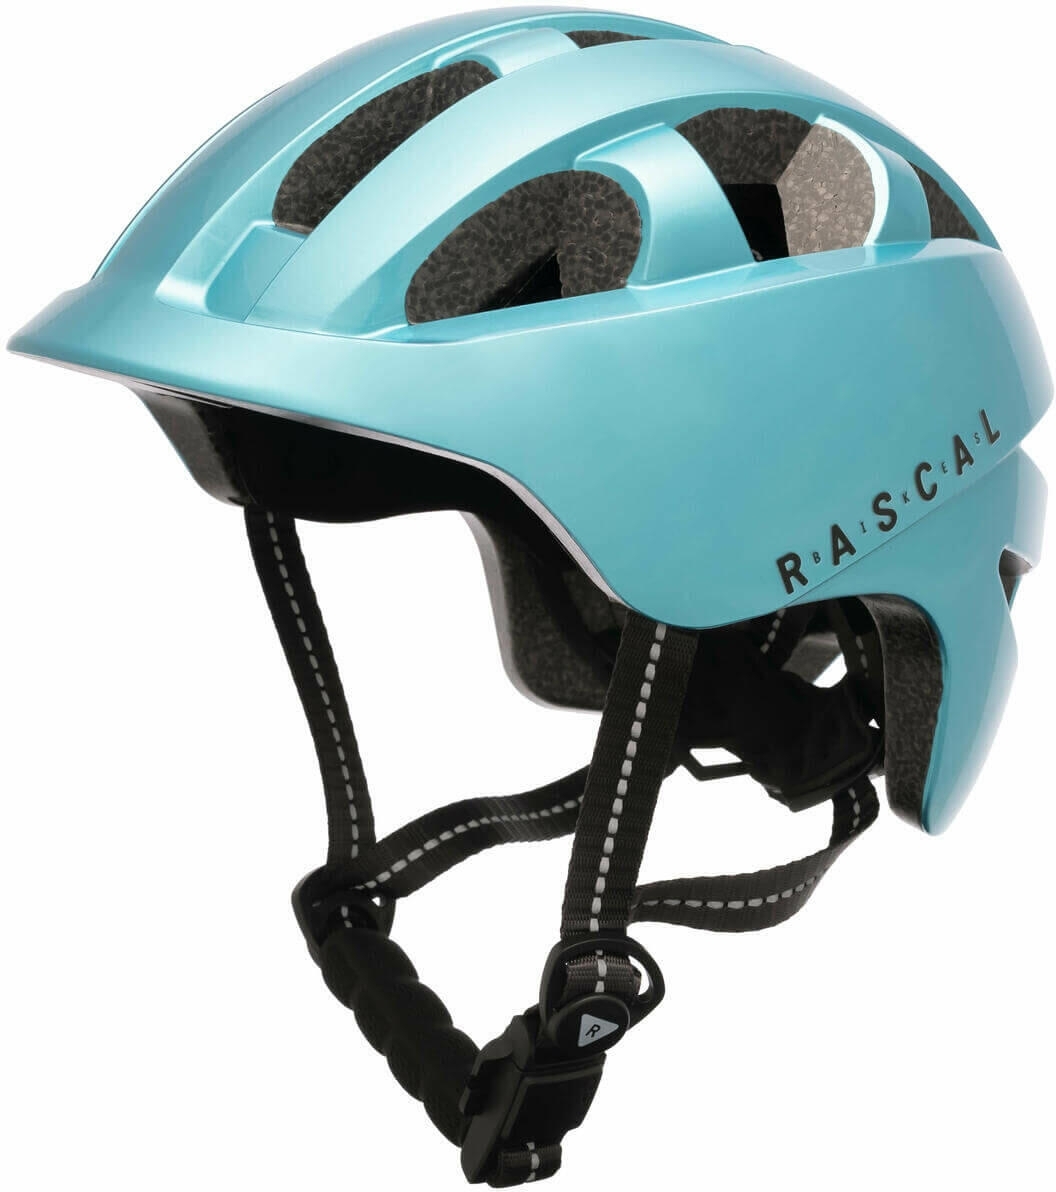 Rascal helma - Aquamarine 45-50